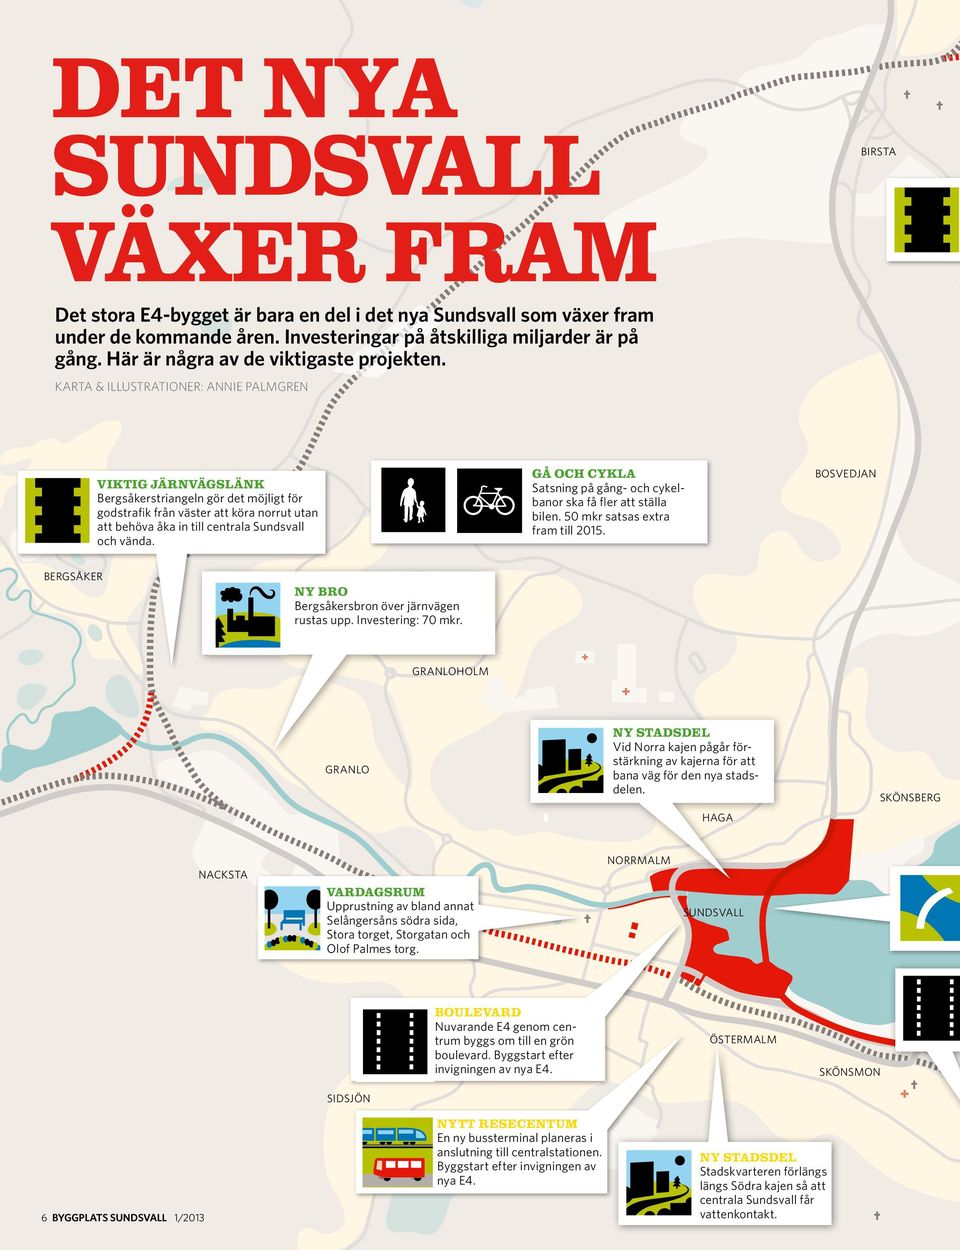 Karta & Illustrationer: Annie Palmgren VIKTIG järnvägslänk Bergsåkerstriangeln gör det möjligt för godstrafik från väster att köra norrut utan att behöva åka in till centrala Sundsvall och vända.